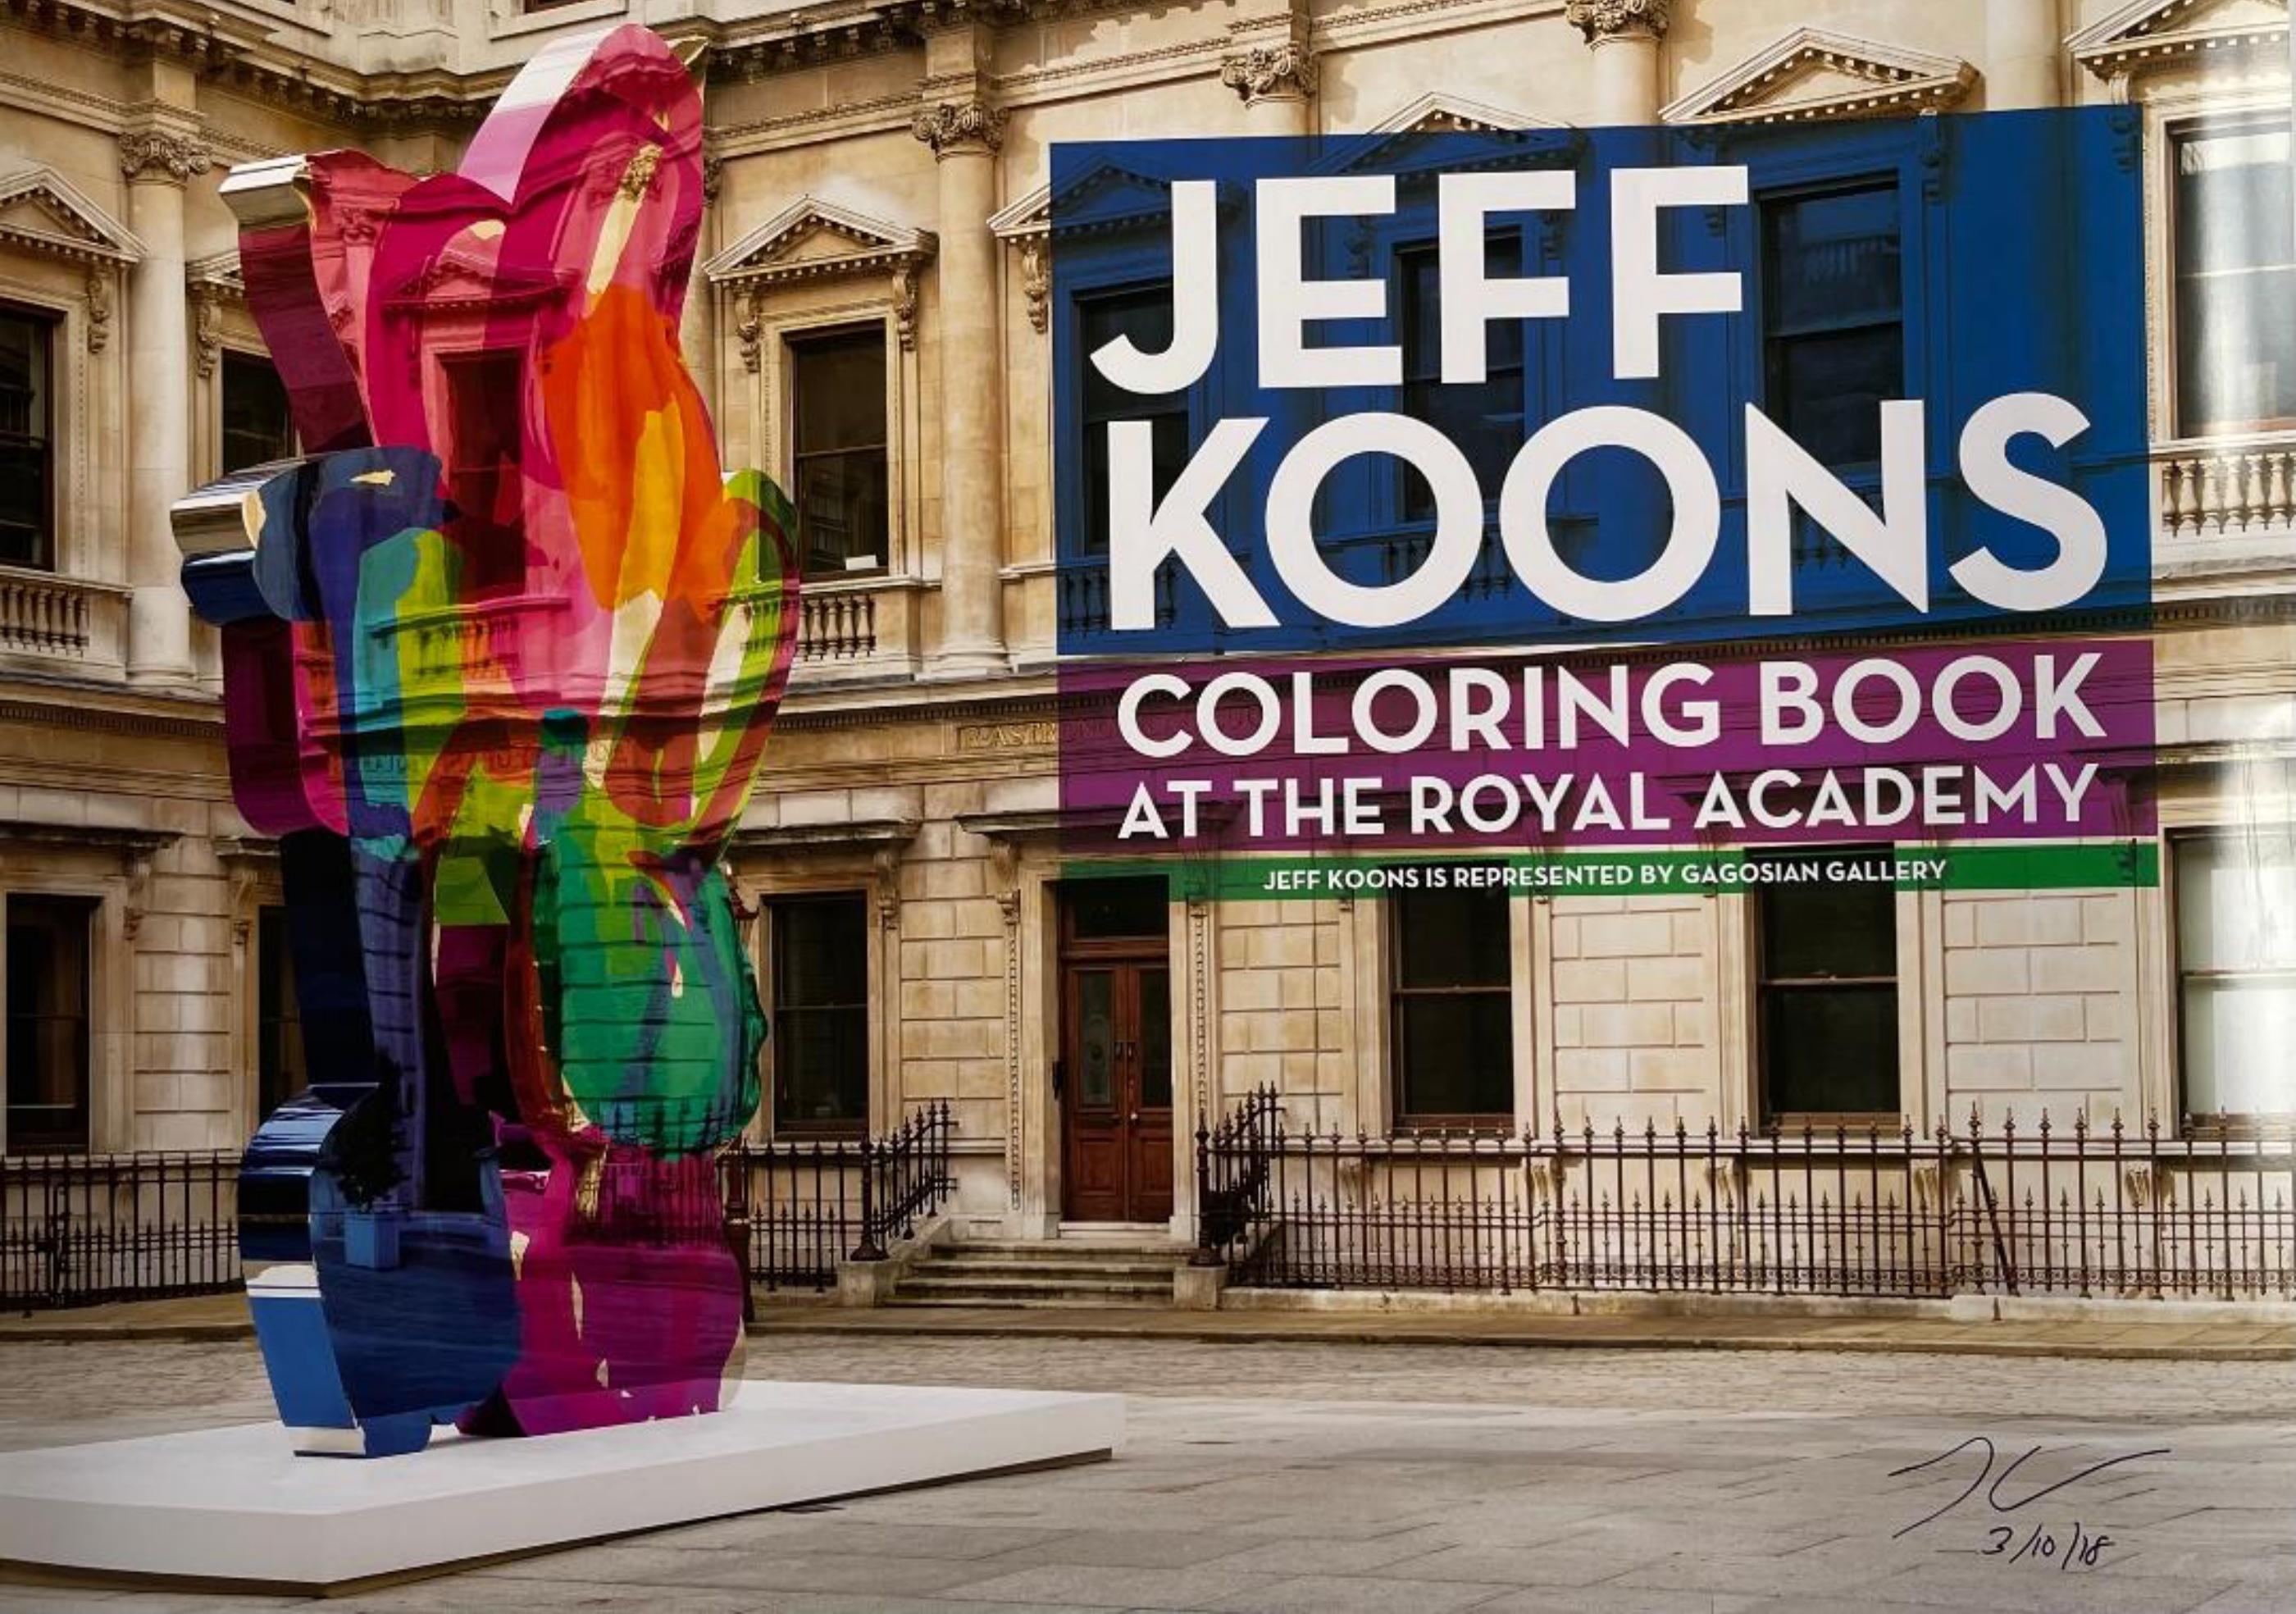 JEFF KOONS
Affiche du Coloring Book de Jeff Koons à la Royal Academy of Arts, 2011 (signée à la main), 2018
Lithographie offset
26 1/2 × 36 1/4 pouces
Audacieusement signé et daté à la main par Jeff Koons au marqueur noir en bas à droite avant